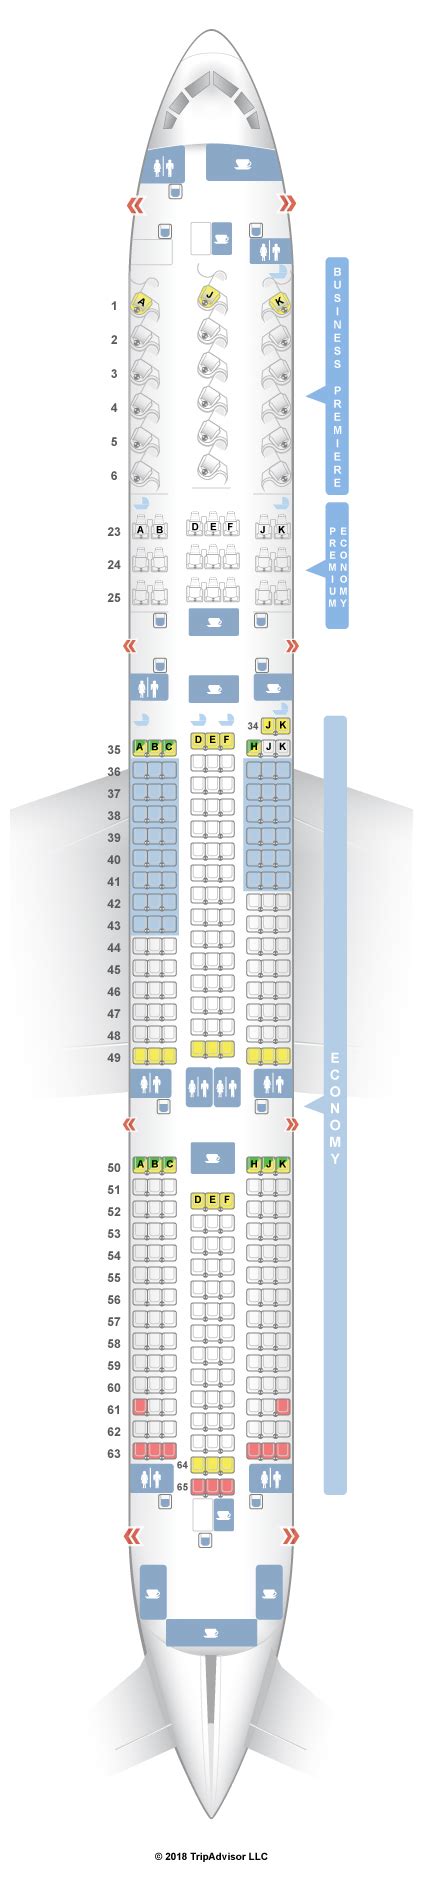 Boeing 787 9 Seat Map El Al